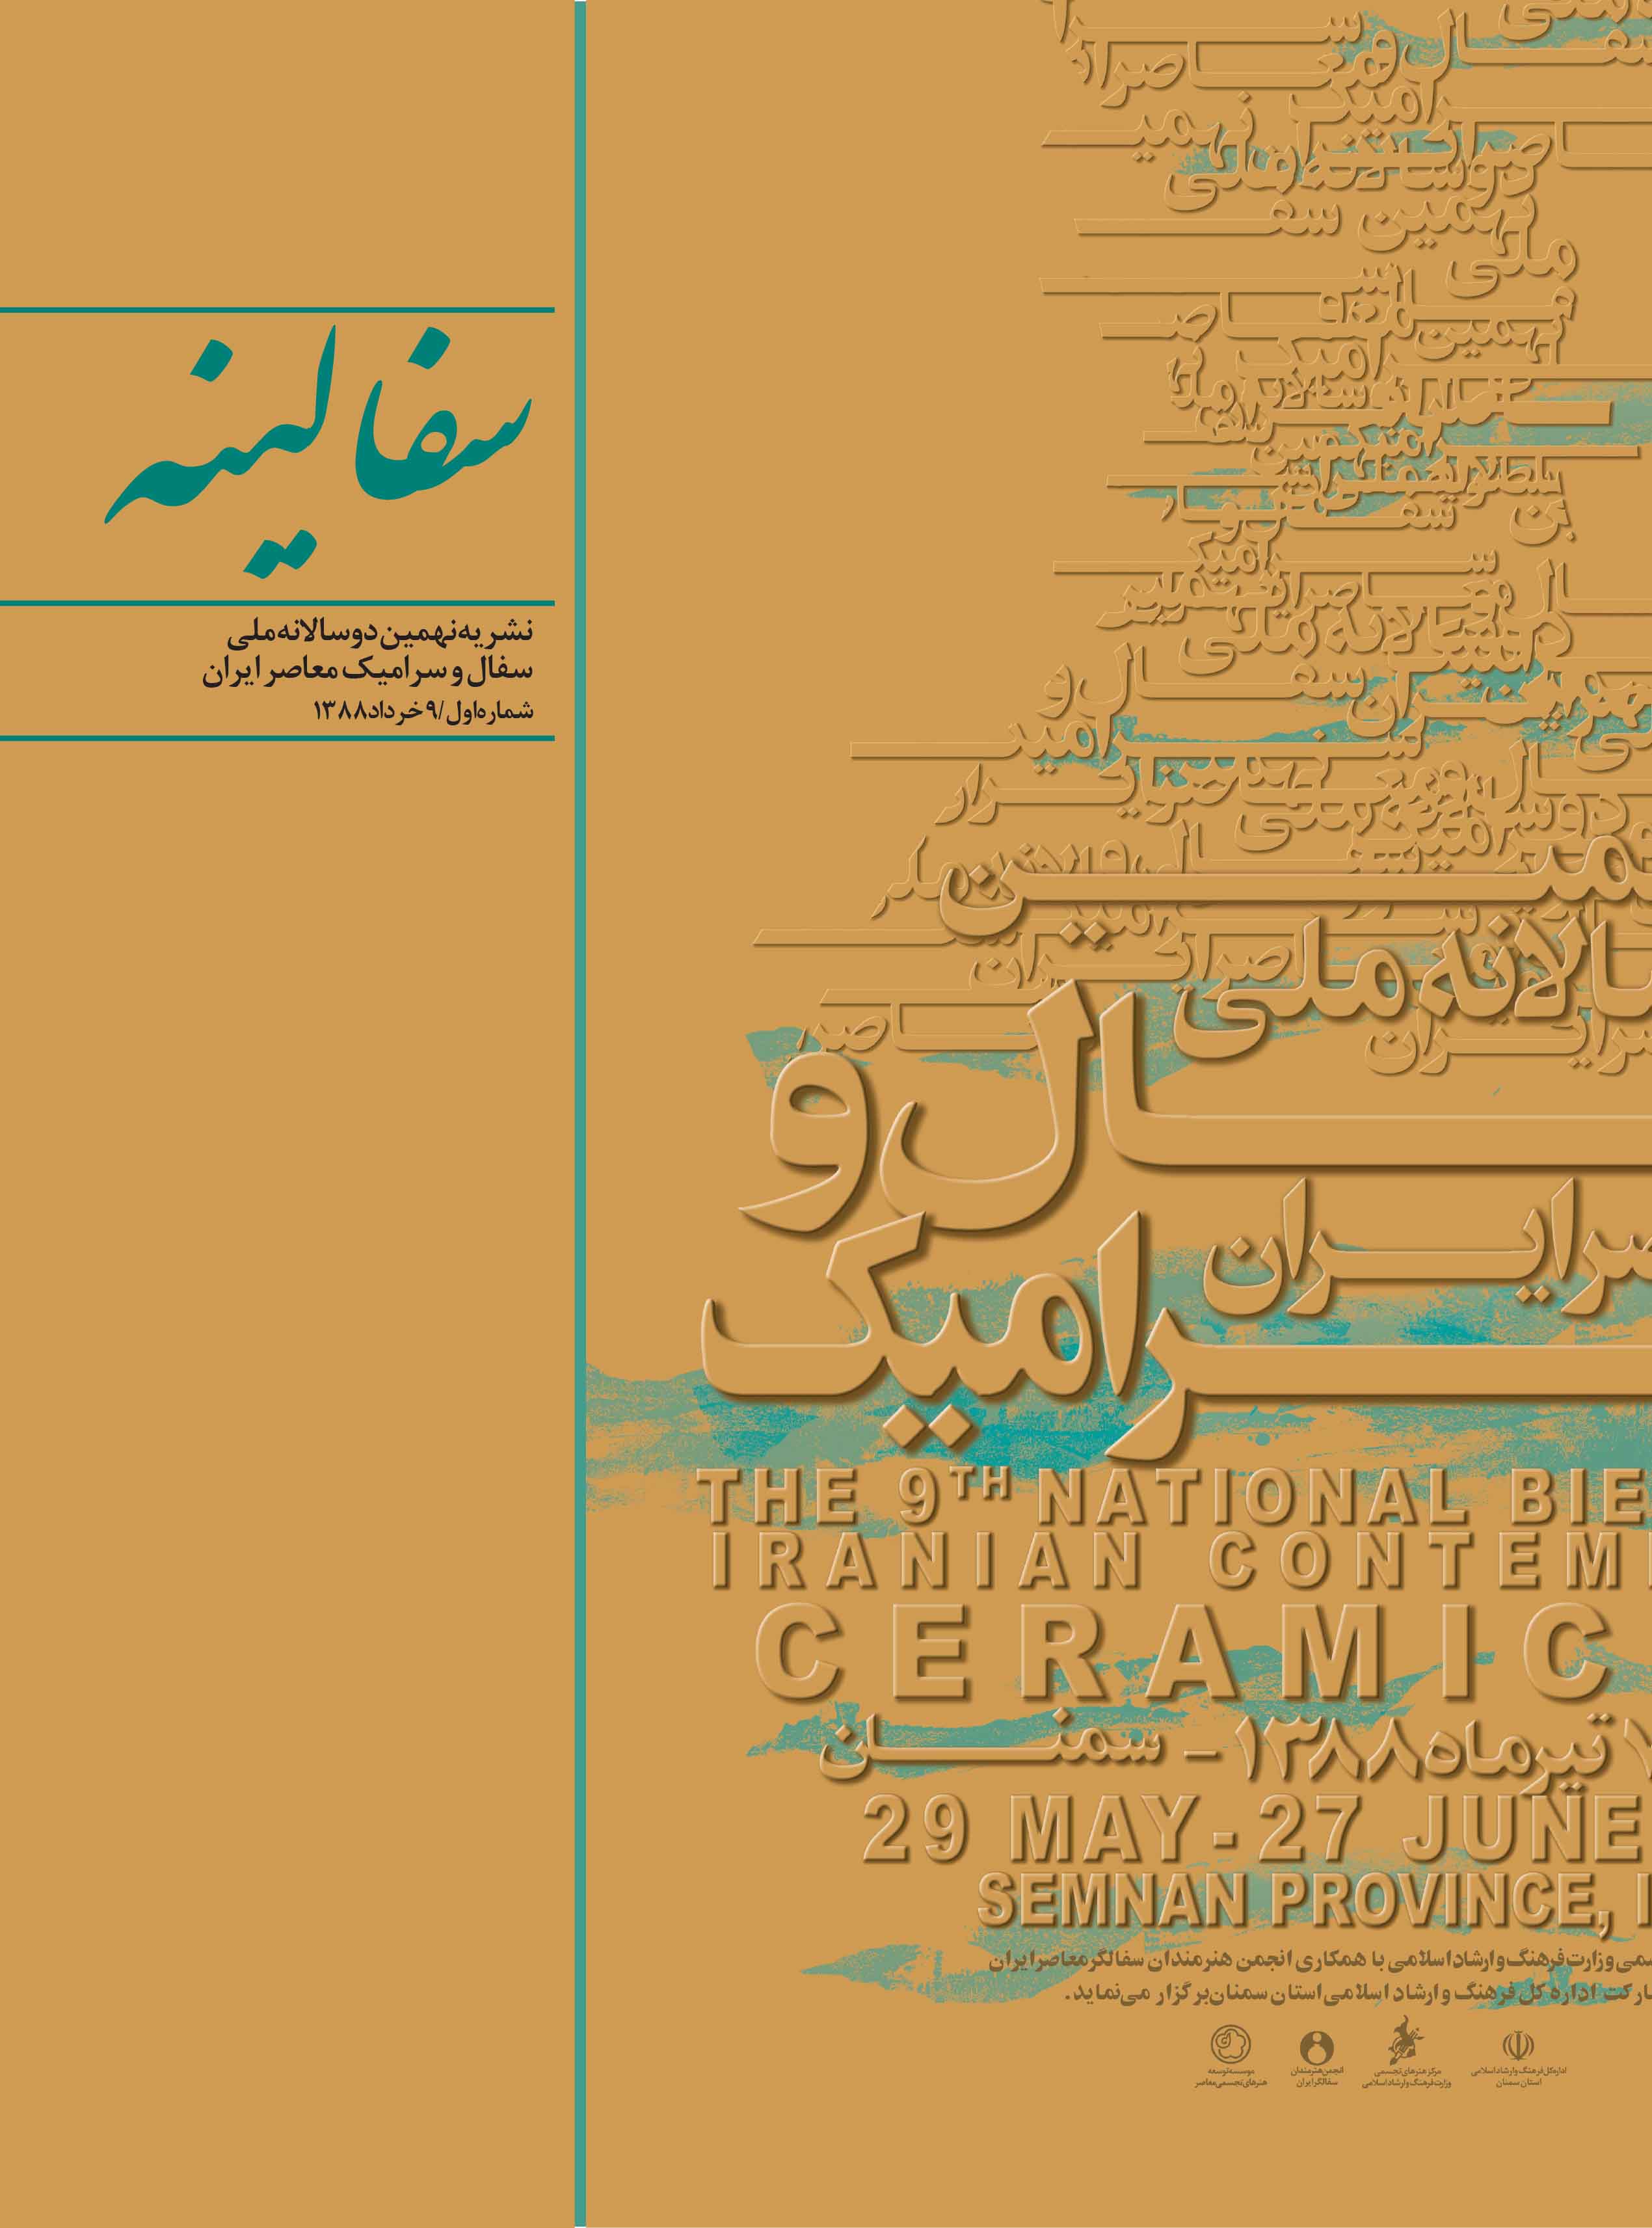 سفالینه - نشریه دوسالانه سفال و سرامیک - شماره 1